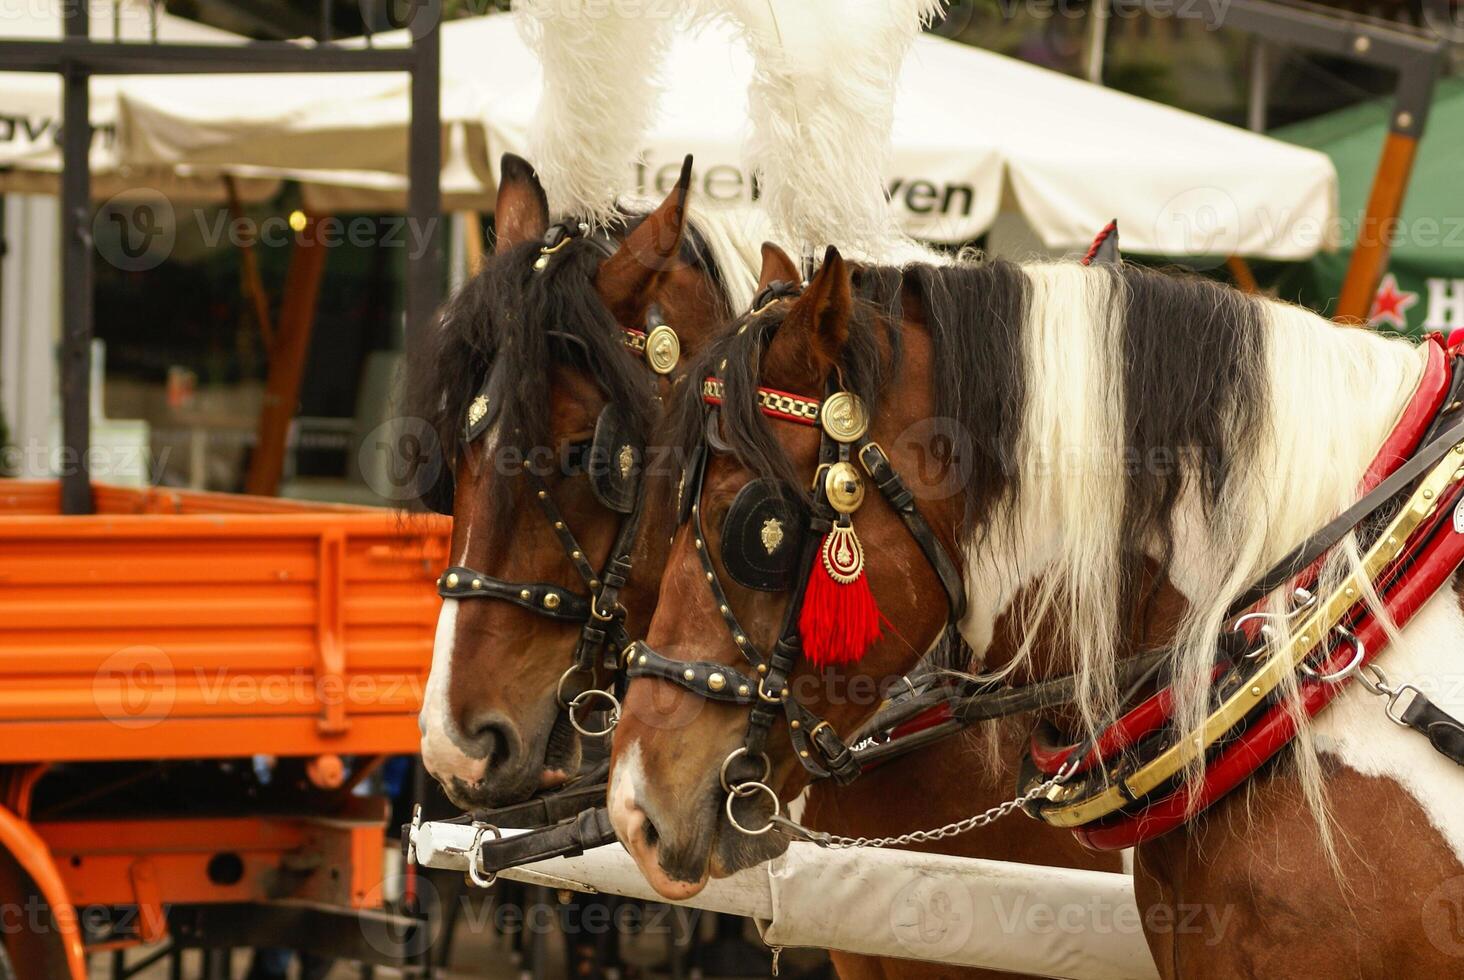 cracovia, polonia, carrozze trainate da cavalli con guide di fronte al st. Basilica di Maria foto